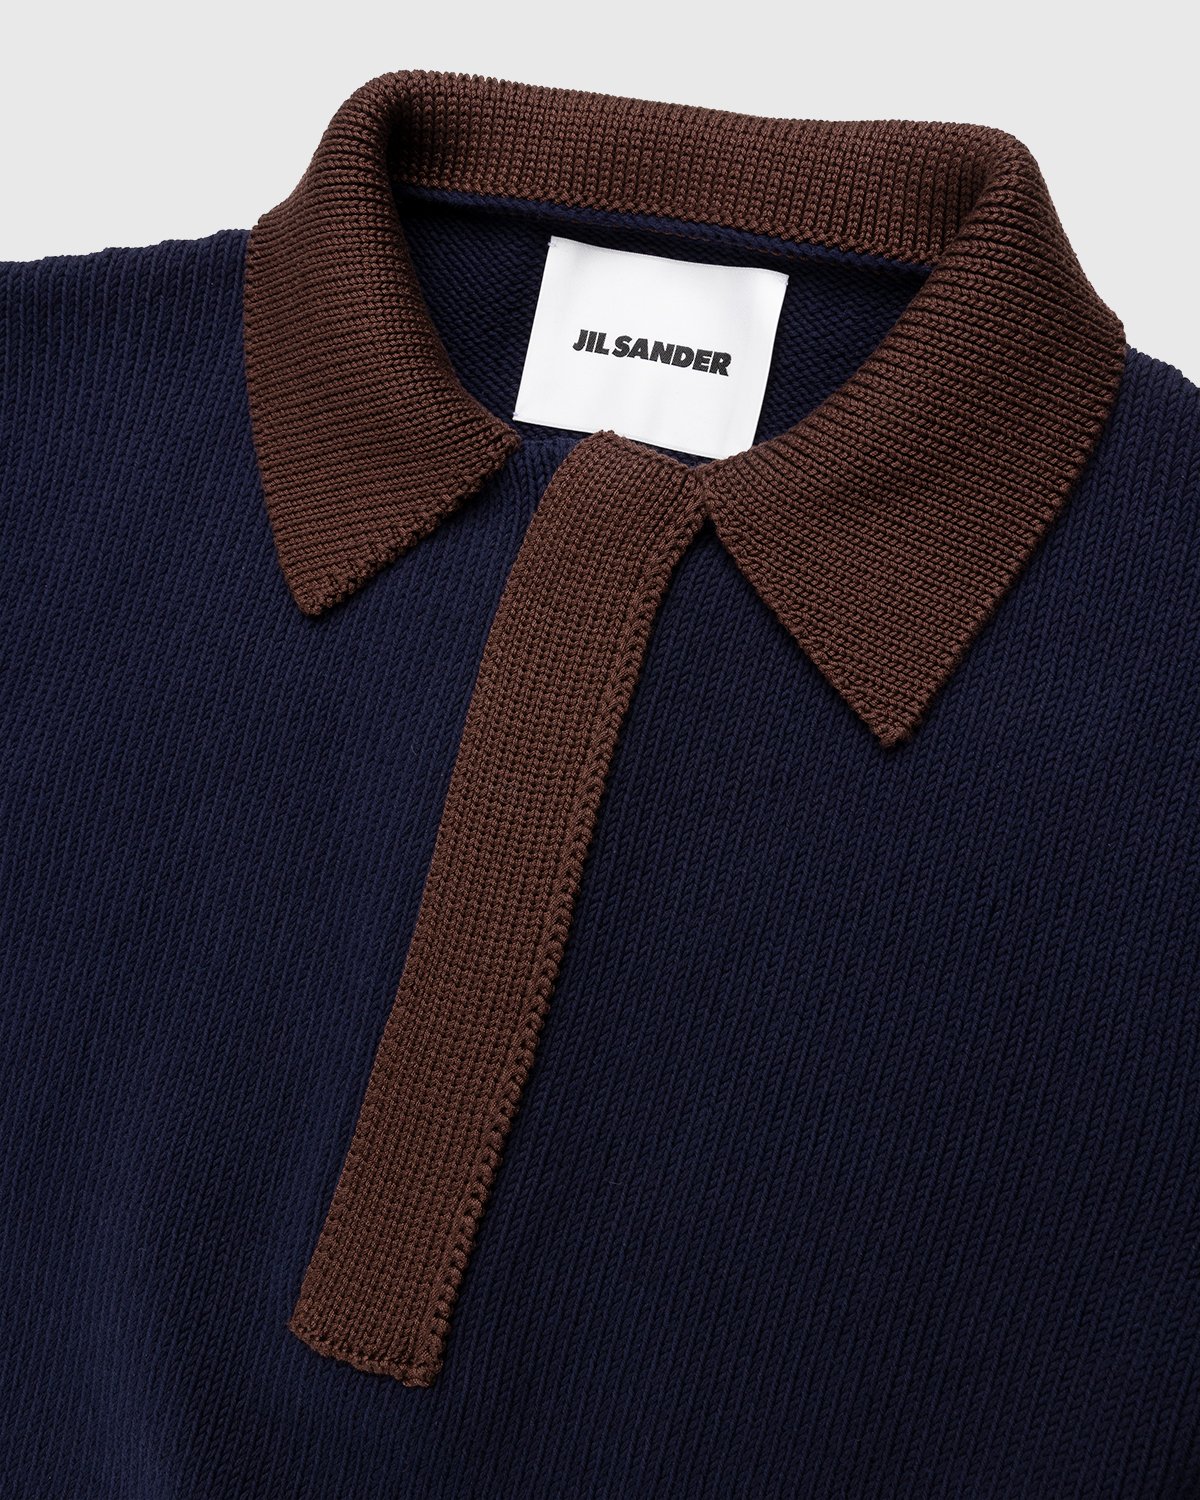 Jil Sander - Short Sleeve Knit Shirt Dark Blue - Clothing - Blue - Image 4